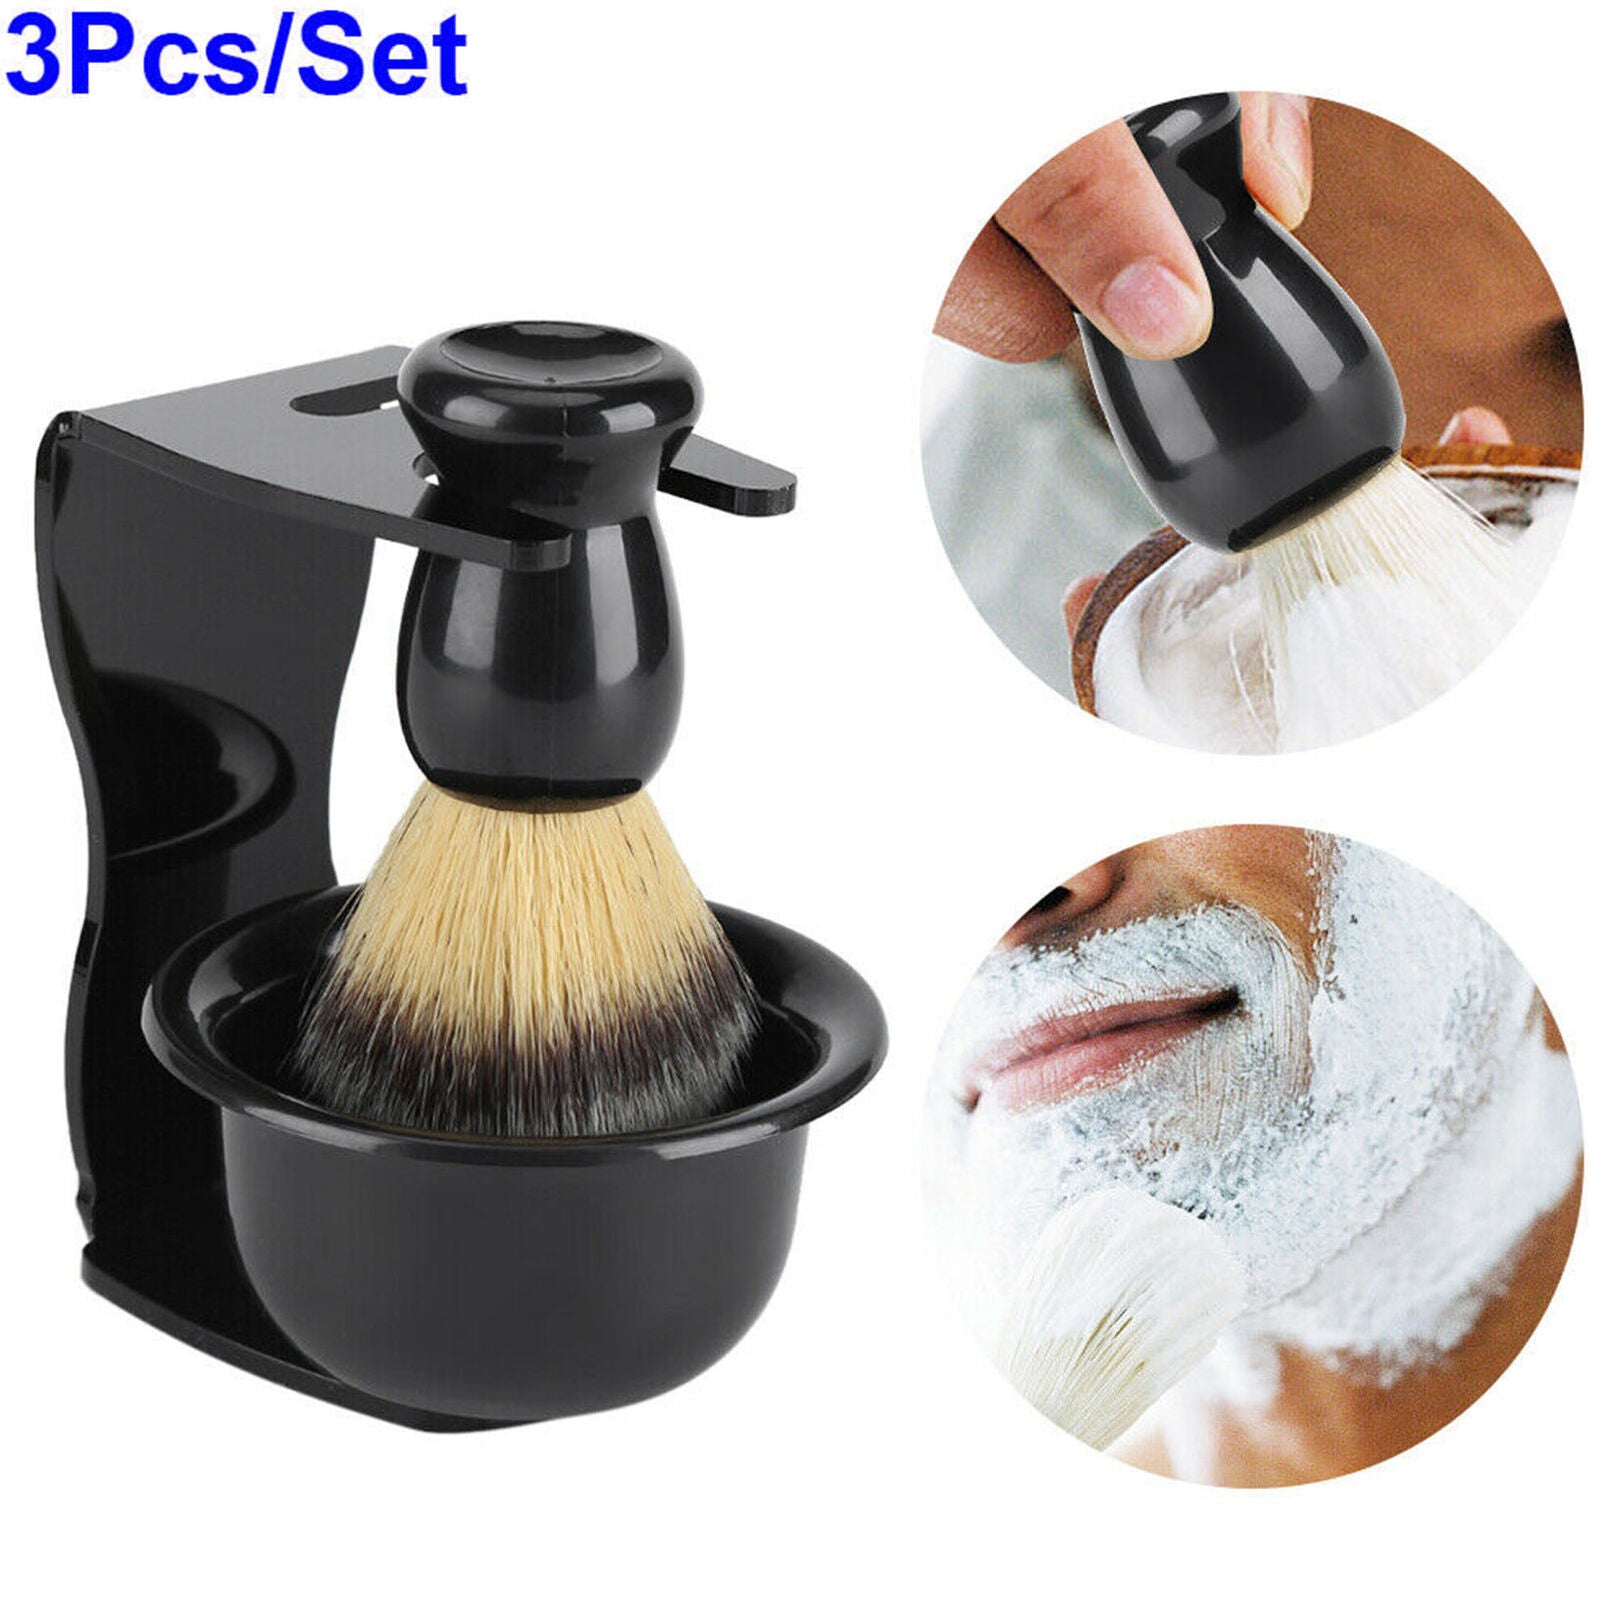 3 in 1 Home Salon Shaving Set Stand Holder & Shaving Brush & Bowl Cup Men